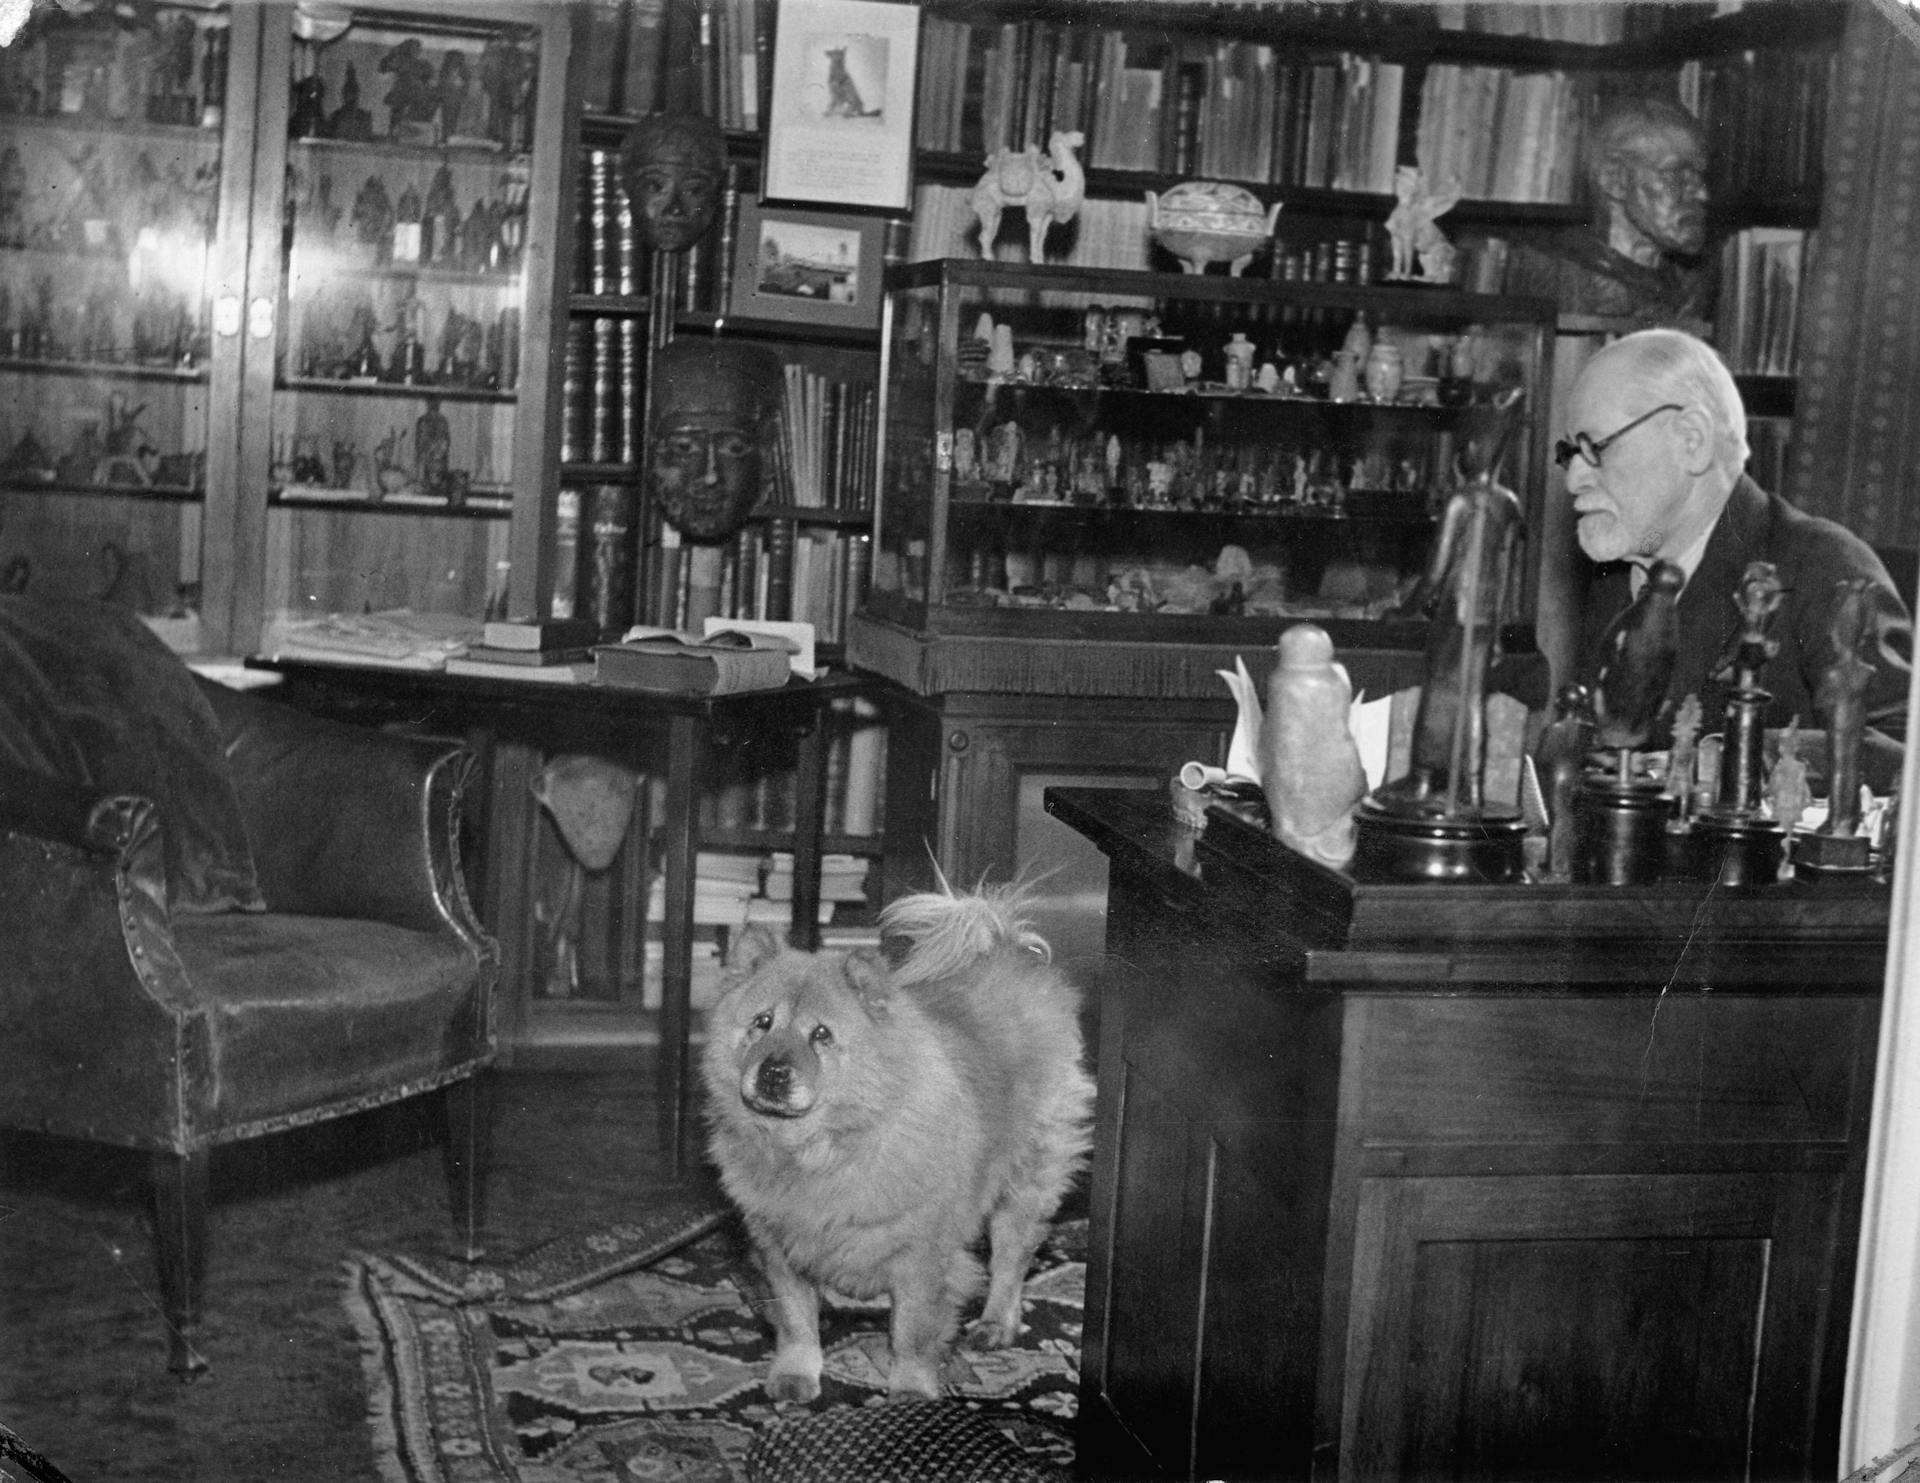 Sigmund Freud aan zijn bureau in de Berggasse 19, Wenen, 1938
© Imagno / Getty Images 